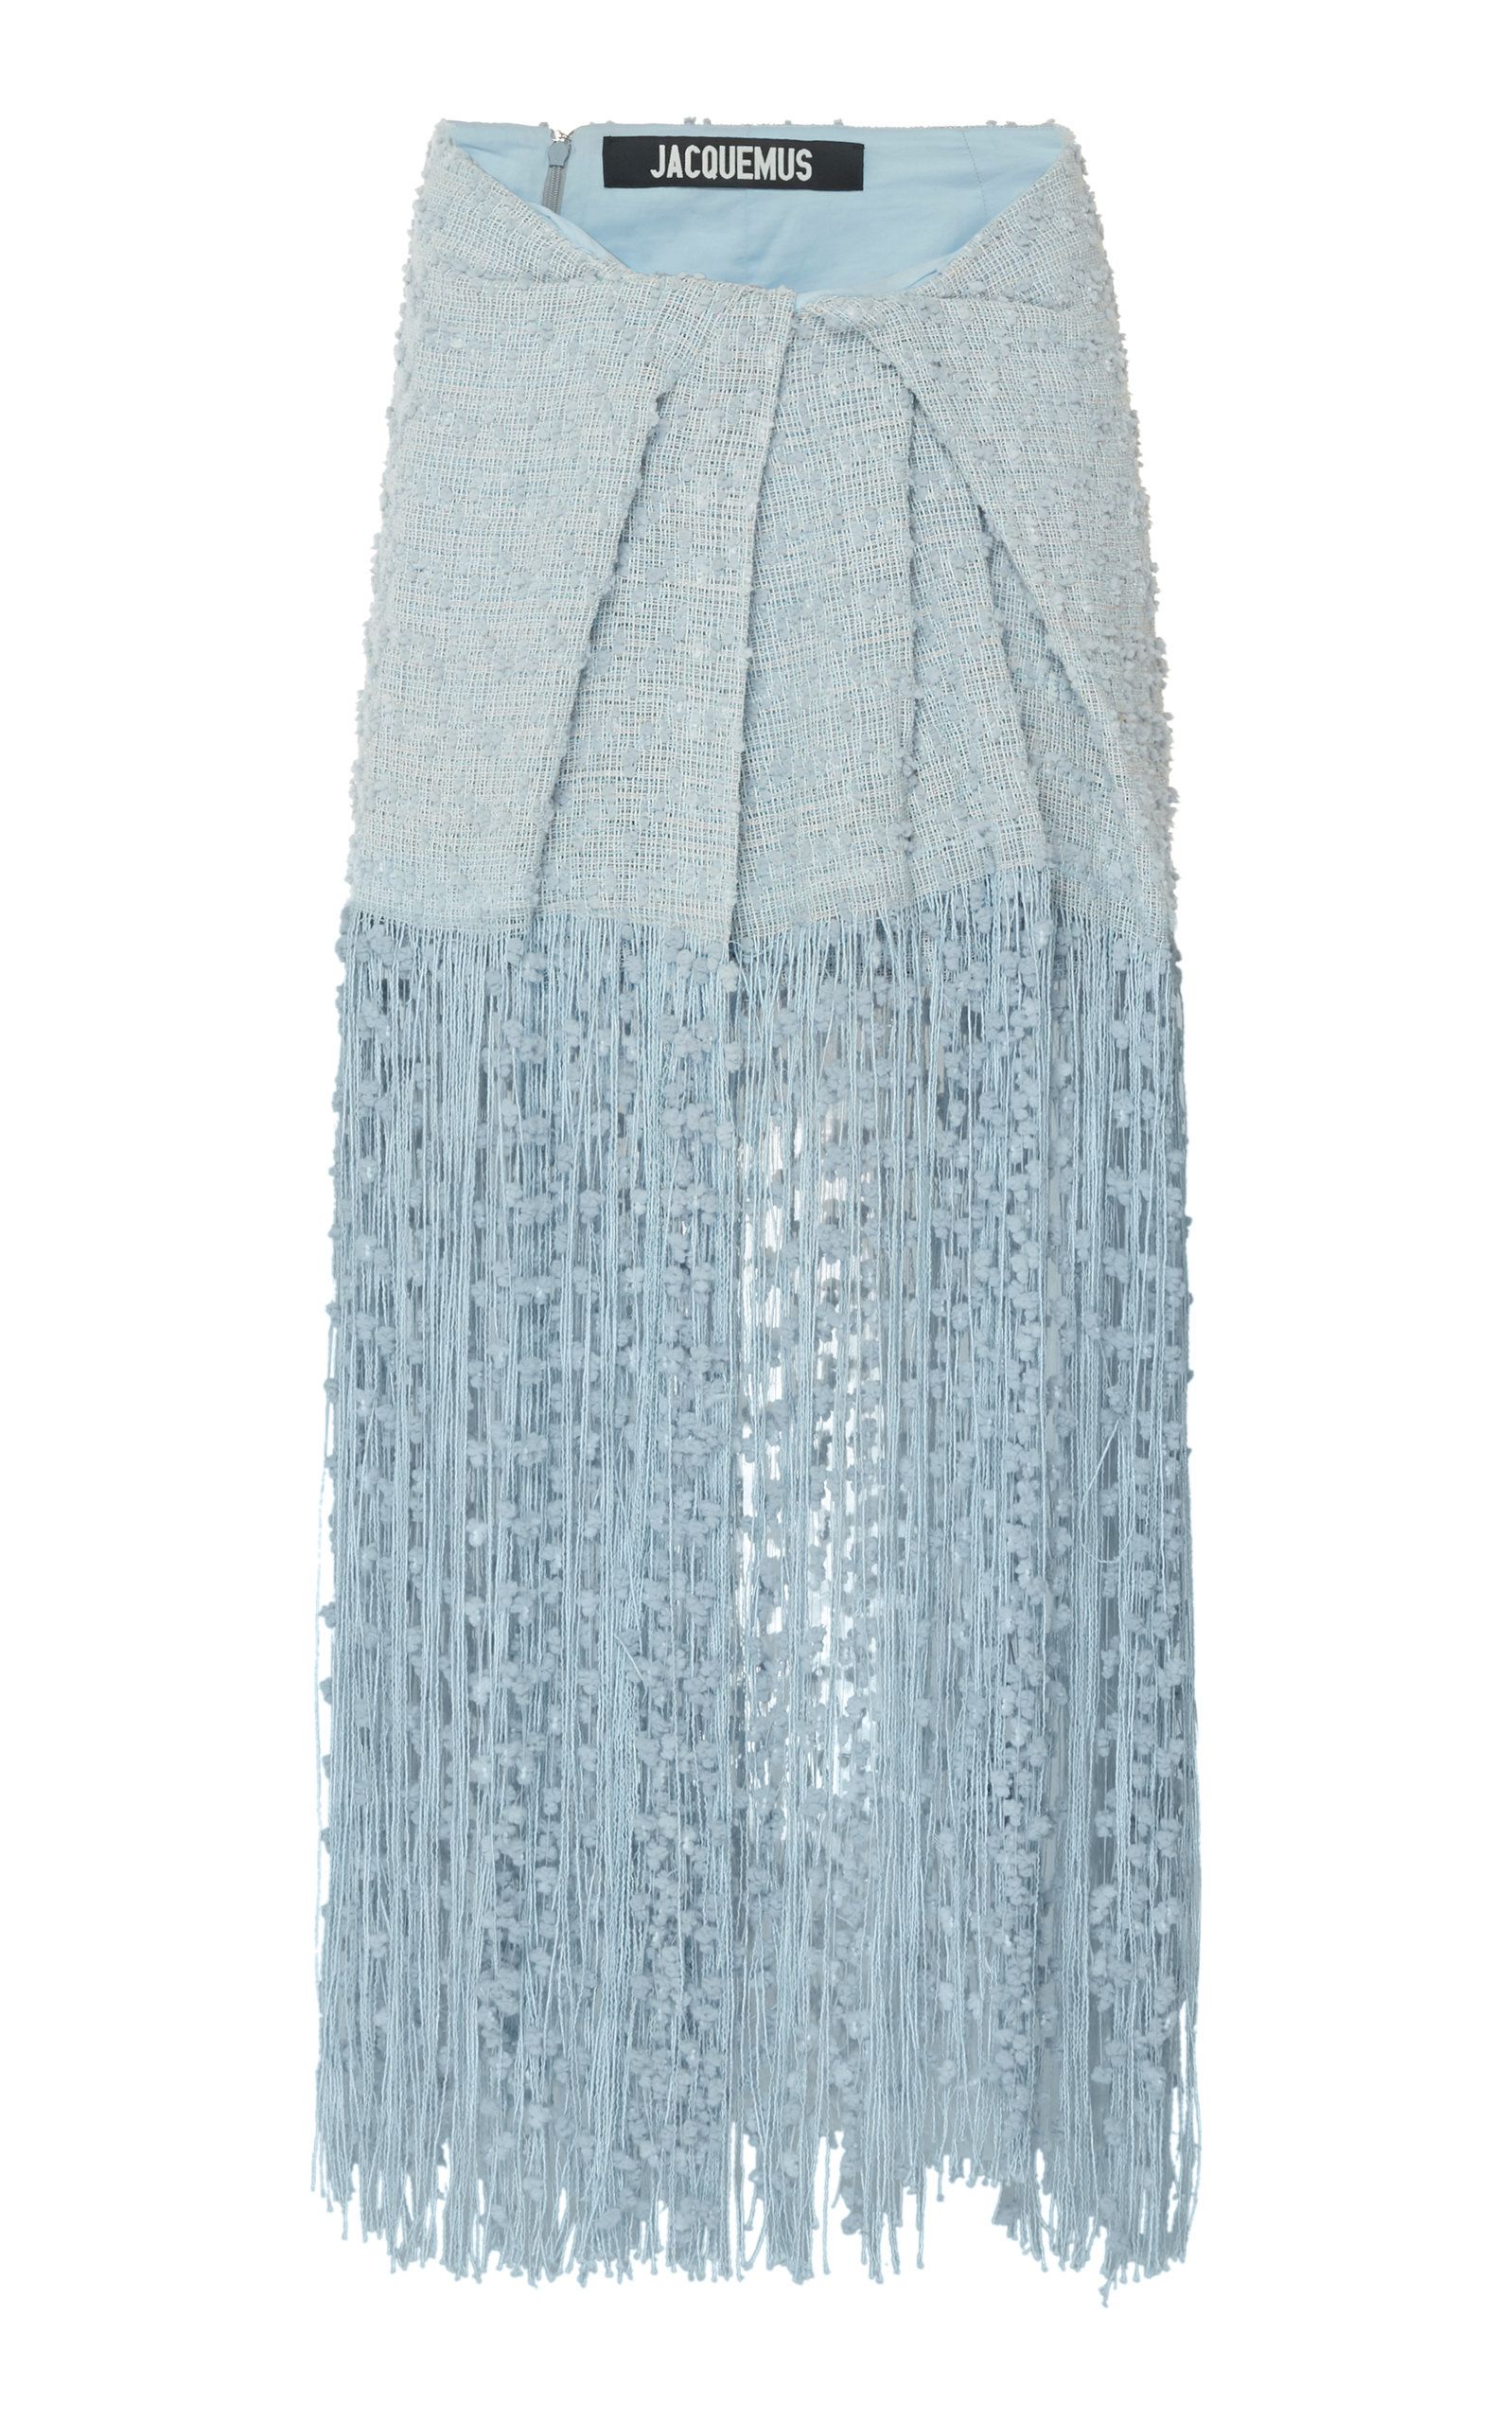 https://hips.hearstapps.com/vader-prod.s3.amazonaws.com/1590597636-large_jacquemus-blue-la-jupe-capri-fringed-linen-blend-midi-skirt.jpg